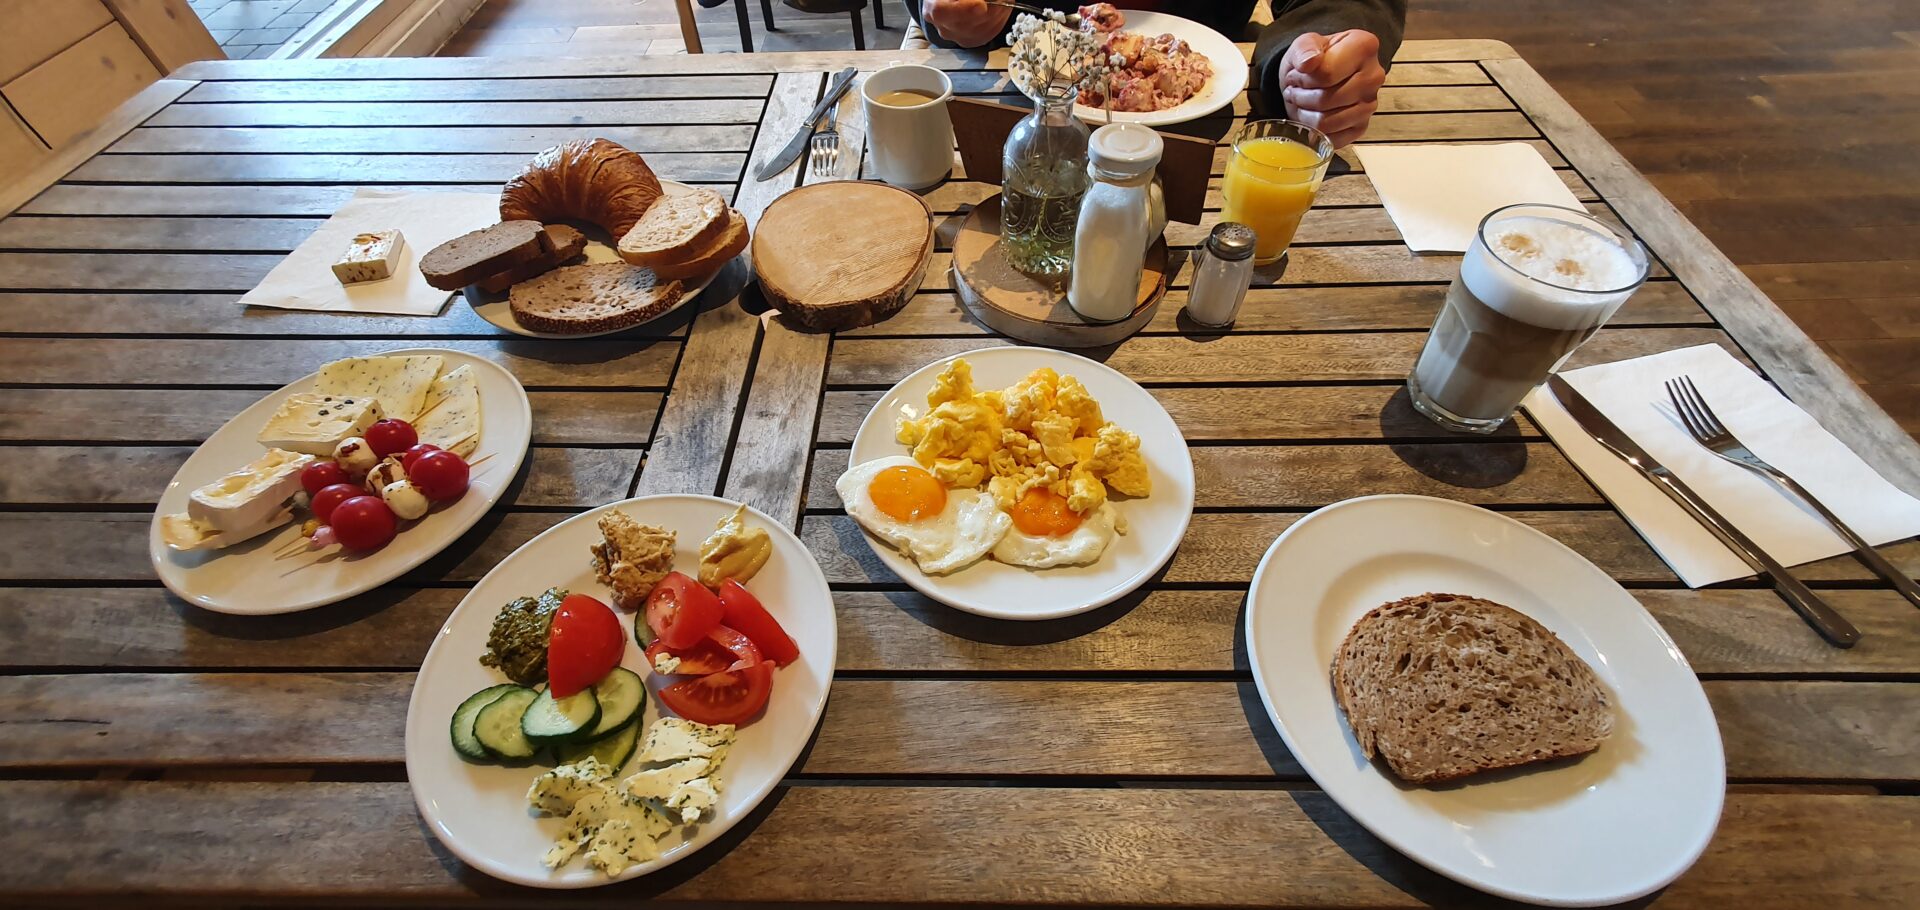 Buffet Frühstück in Mechernich immer gut